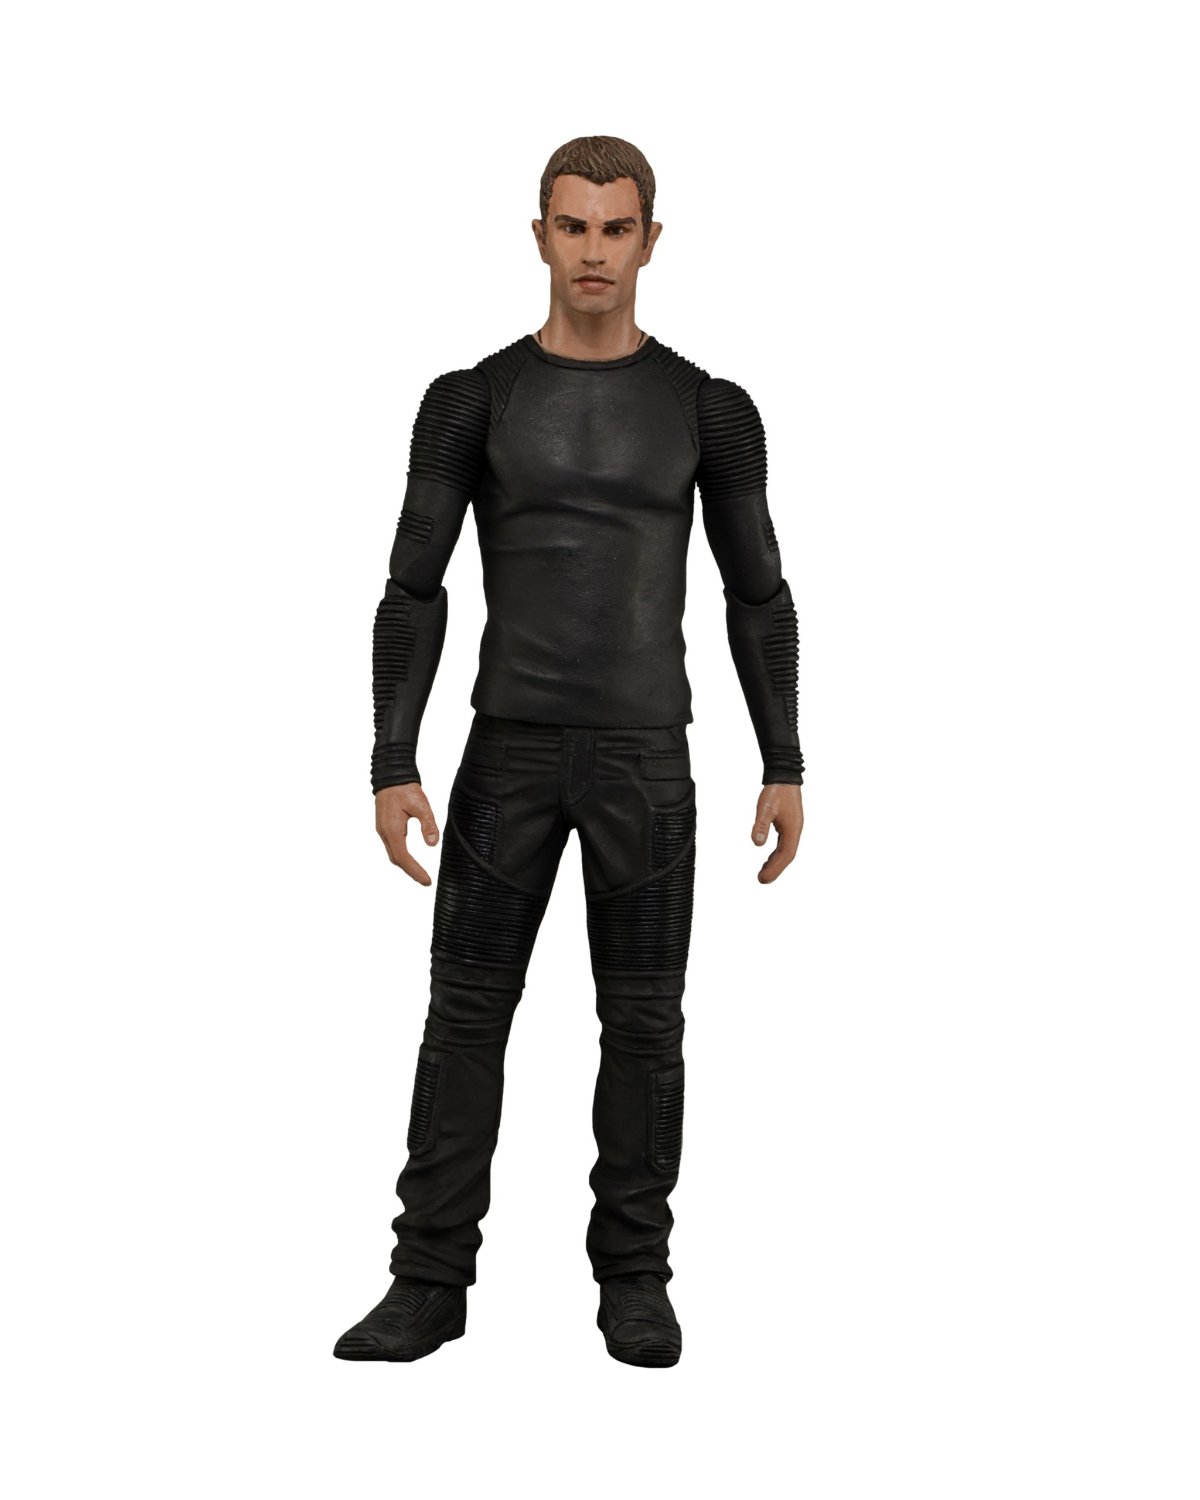 Divergent Four - 7" Action Figure - Click Image to Close